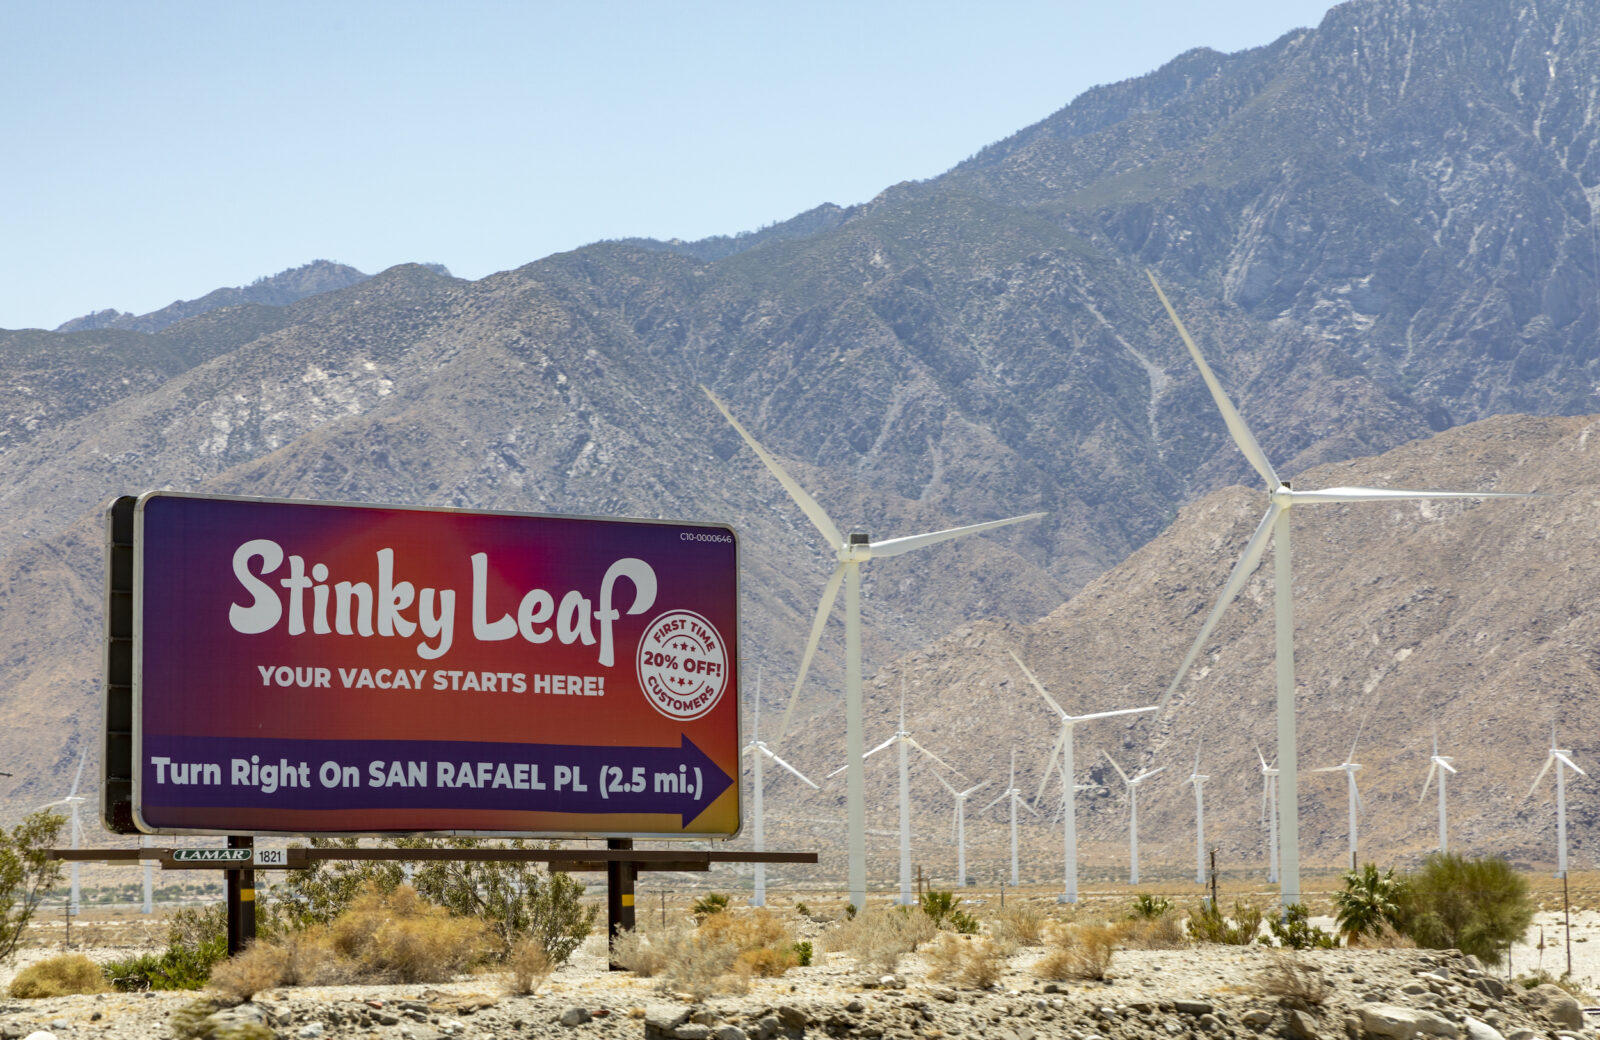 Desert Hot Springs, Kalifornien, USA - 04. Mai 2022: Eine Werbetafel für Stinky Leaf Cannabis am Straßenrand © iStock.com/LizzieMaher